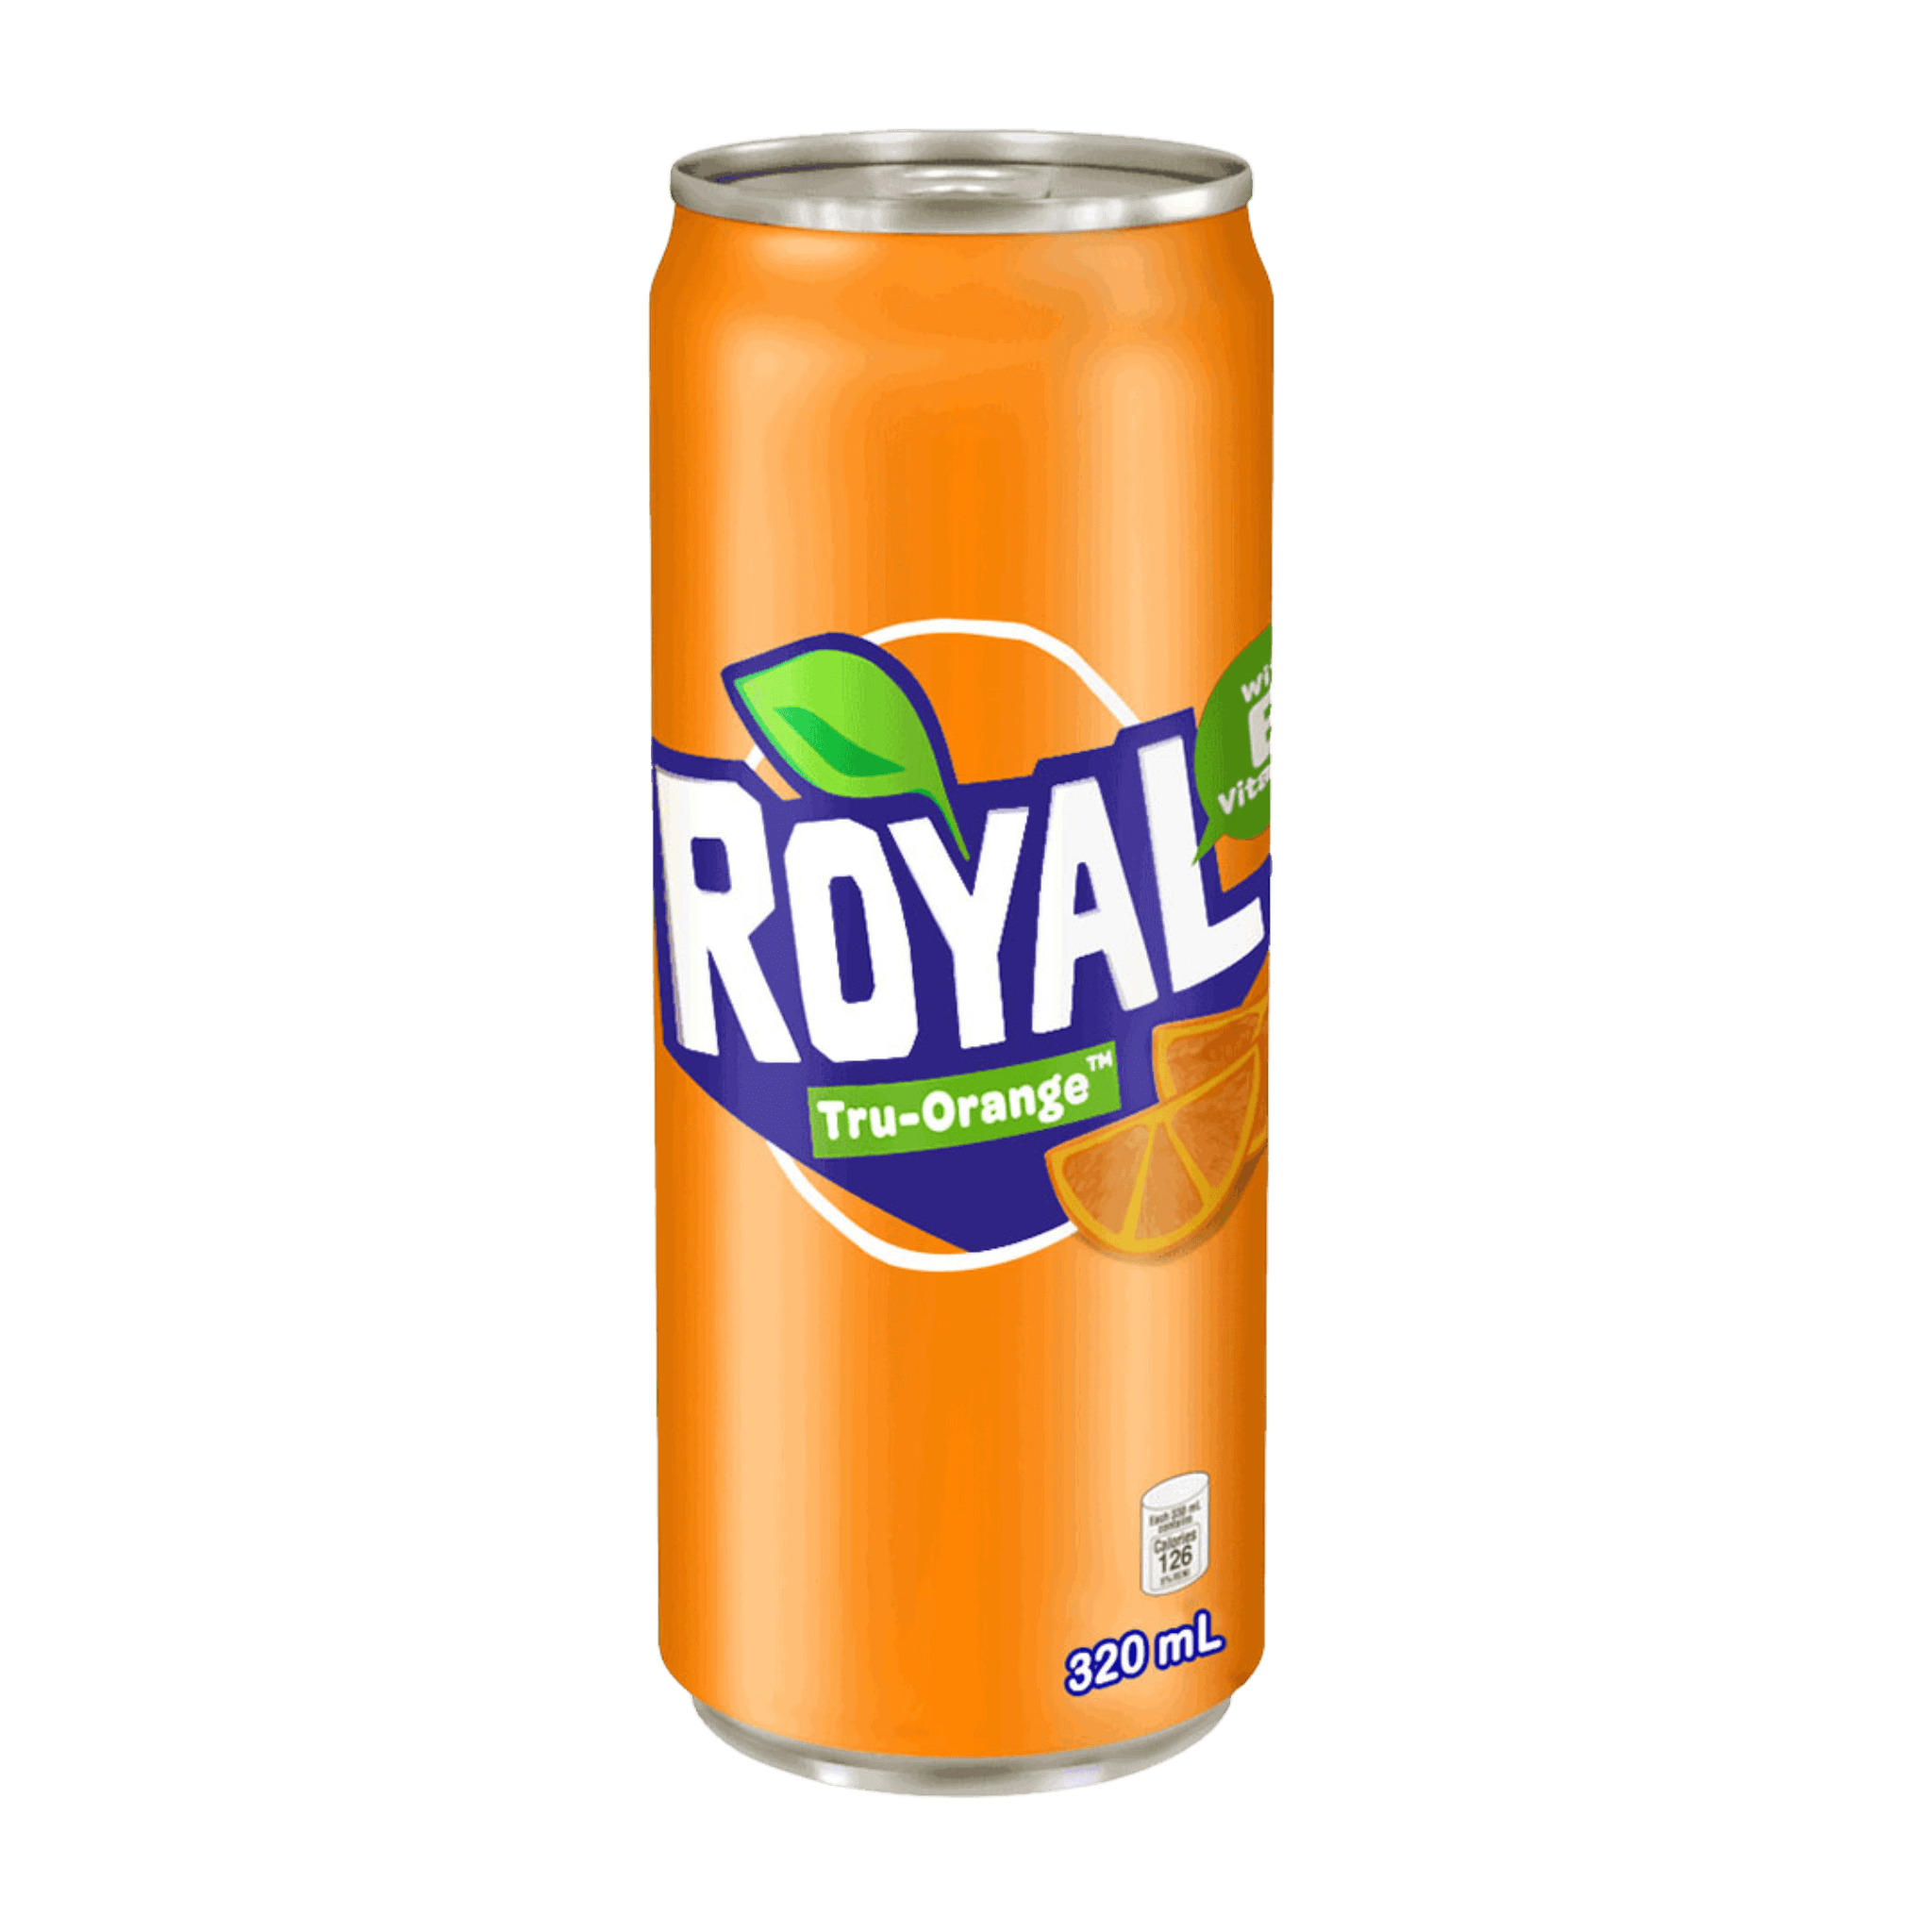 Royal Tru-Orange 320ml Can at ₱49.00